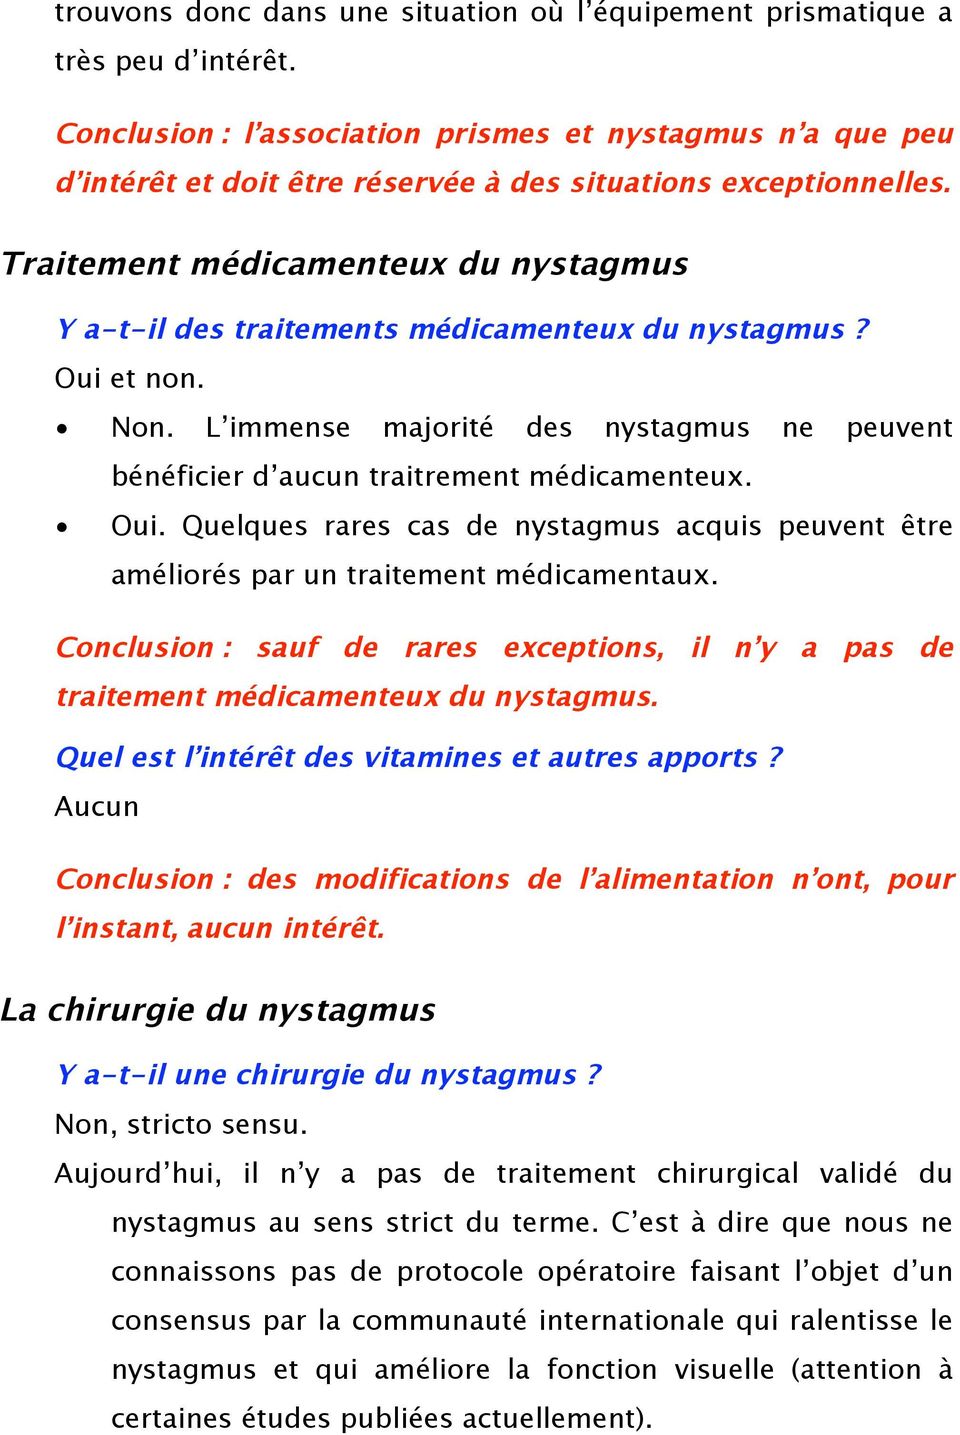 Traitement médicamenteux du nystagmus Y a-t-il des traitements médicamenteux du nystagmus? Oui et non. Non. L immense majorité des nystagmus ne peuvent bénéficier d aucun traitrement médicamenteux.